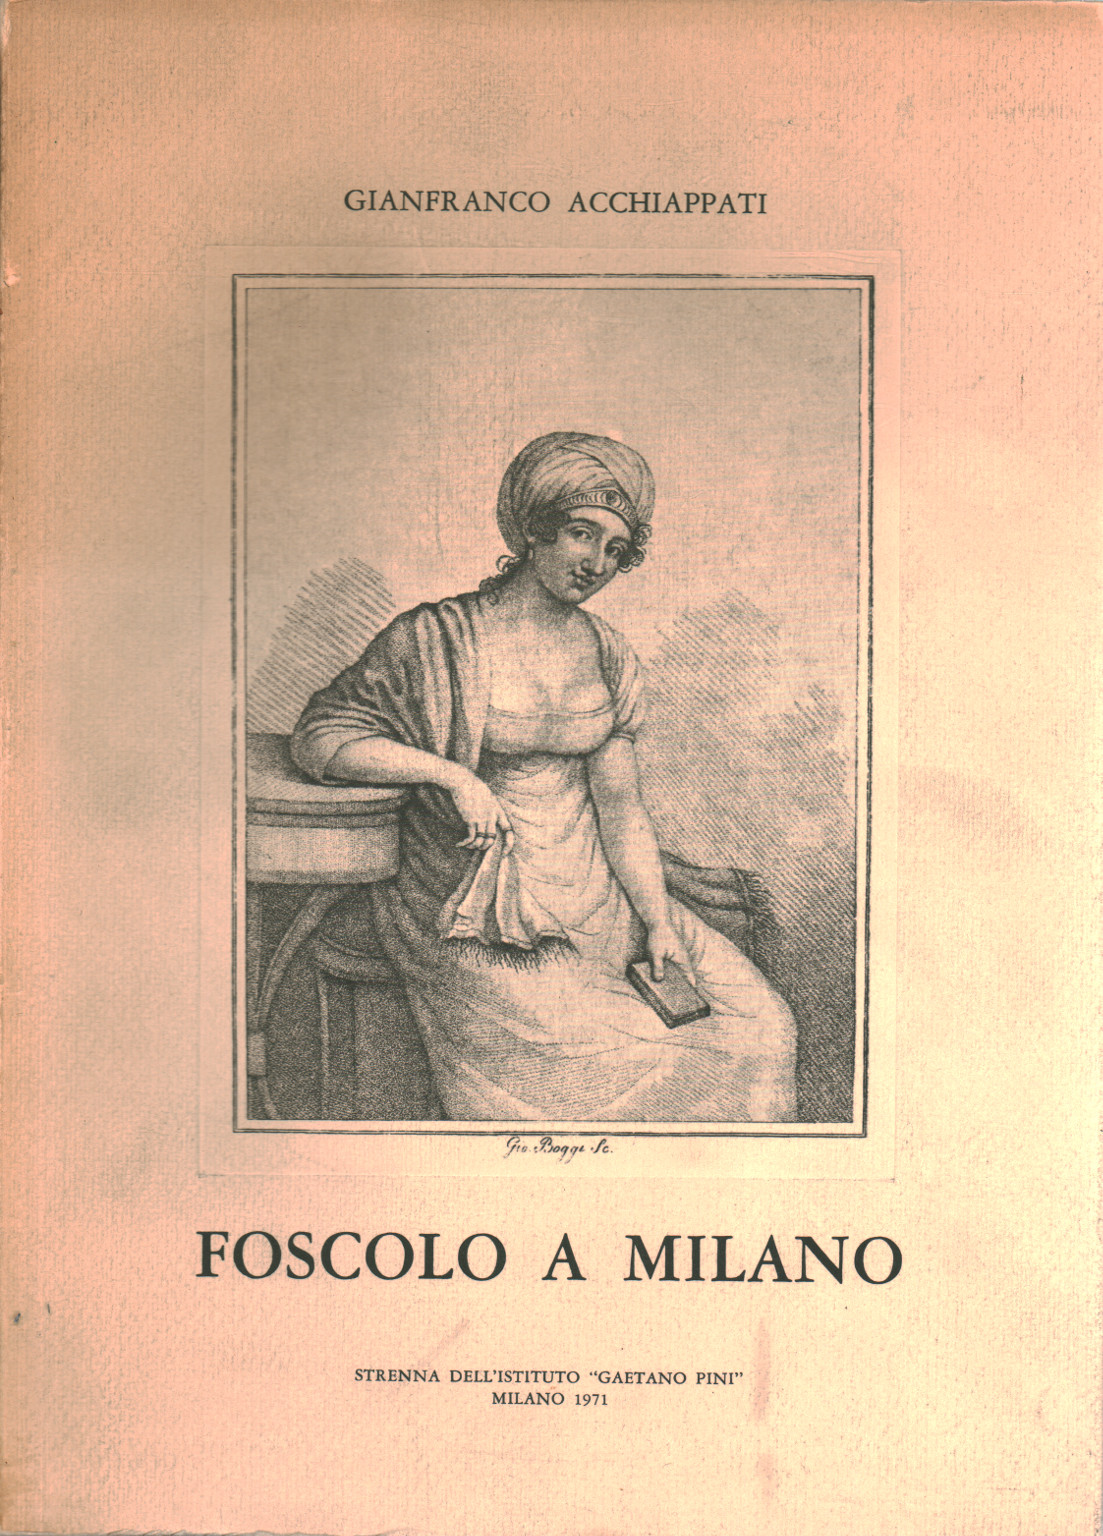 Foscolo a Milano, s.a.